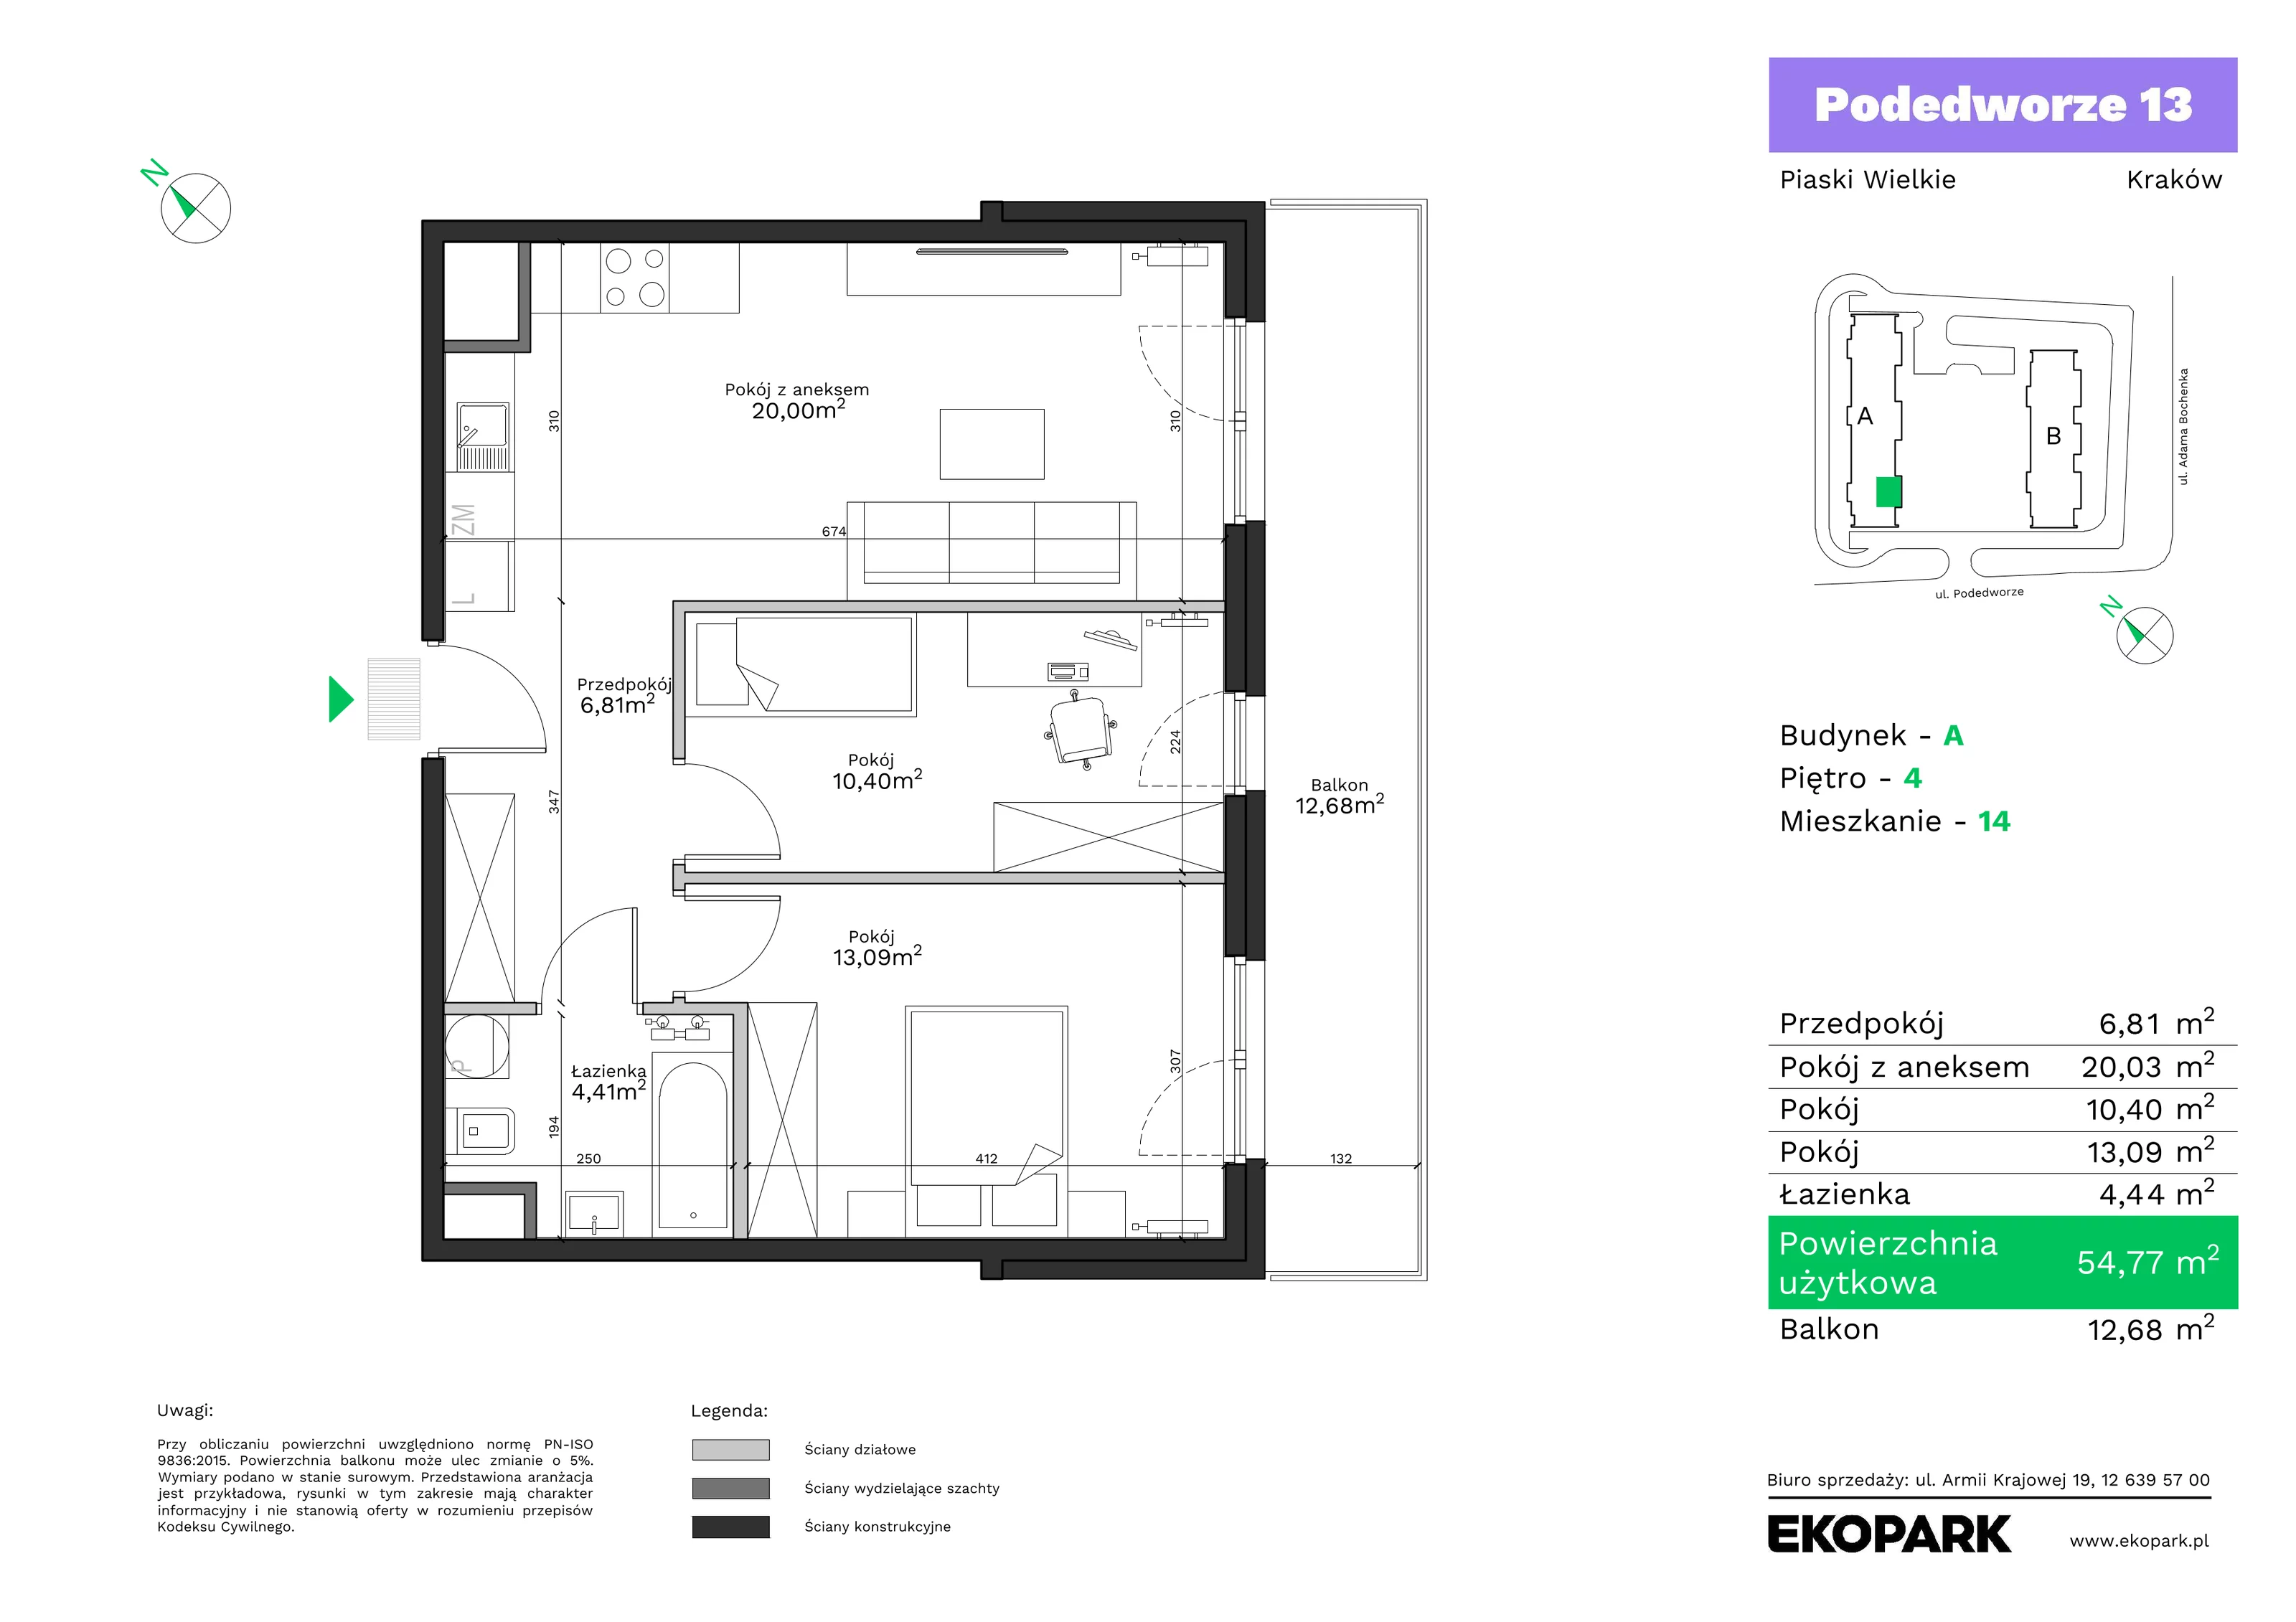 Mieszkanie 54,77 m², piętro 4, oferta nr A14, Podedworze 13, Kraków, Podgórze Duchackie, Piaski Wielkie, ul. Podedworze 13